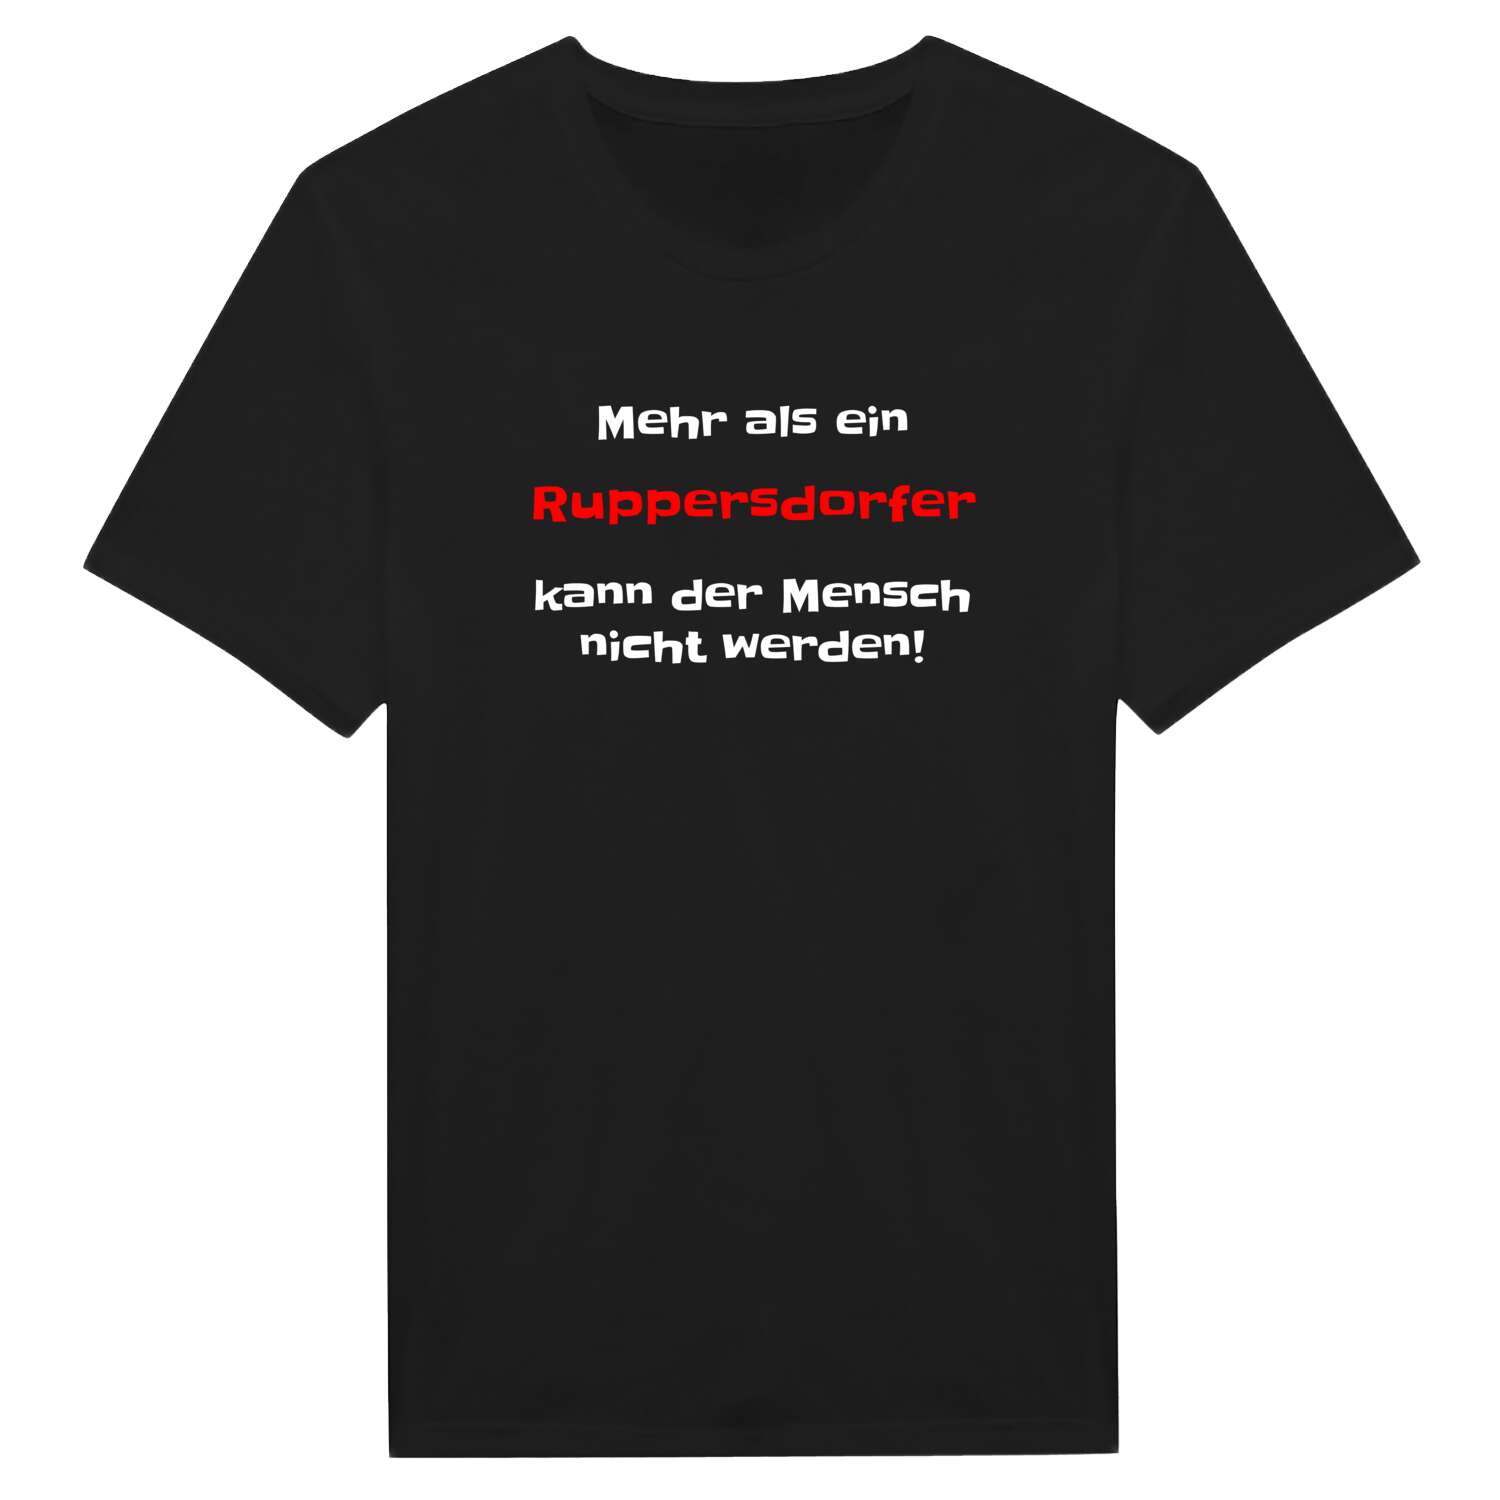 Ruppersdorf T-Shirt »Mehr als ein«